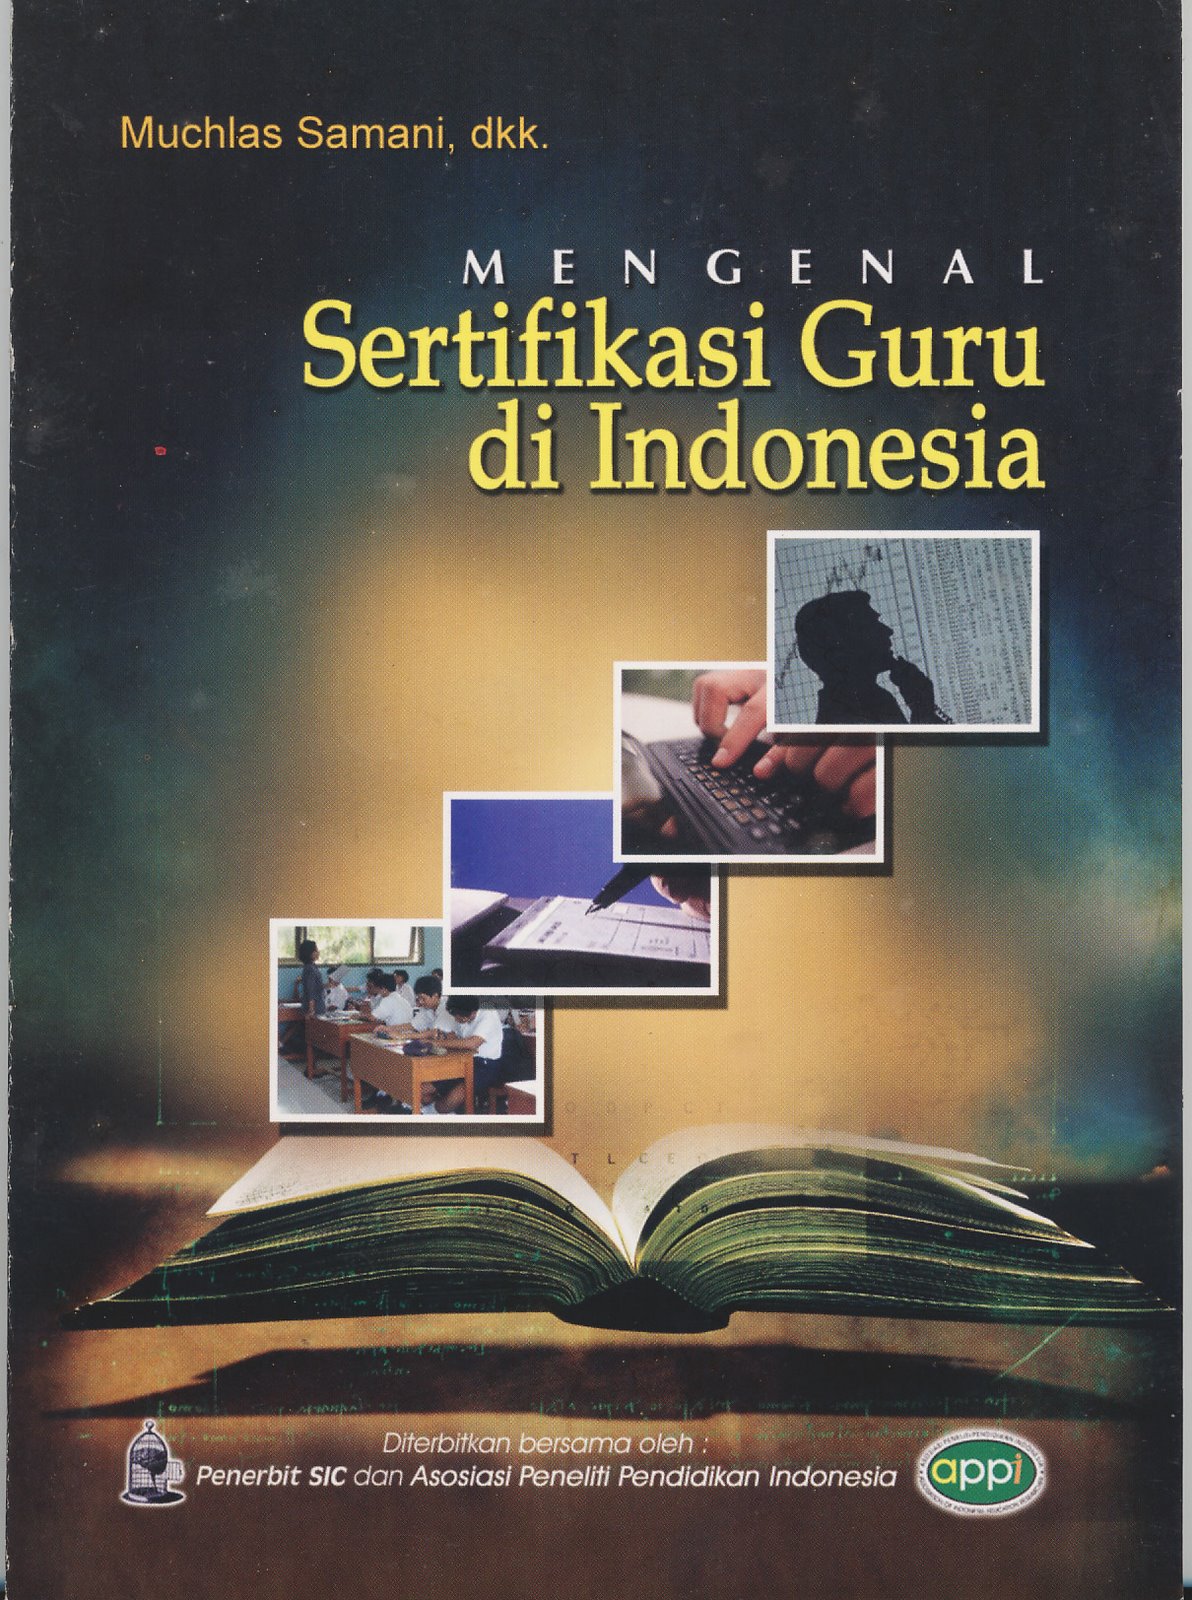 [Mengenal+sertifikasi+Guru+Indonesia.jpg]